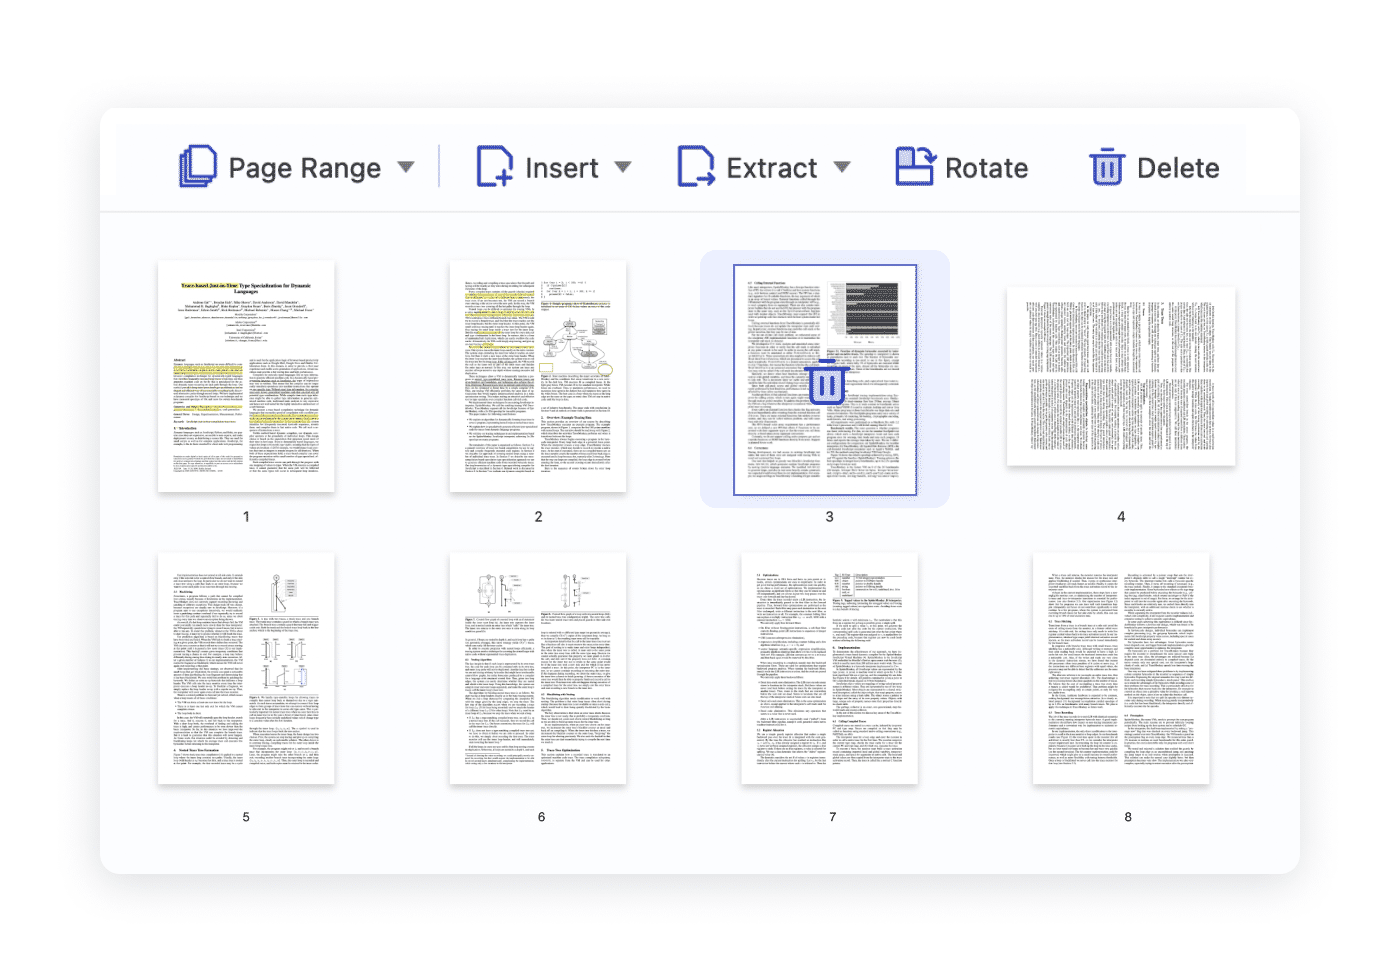 PDF Delete Pages